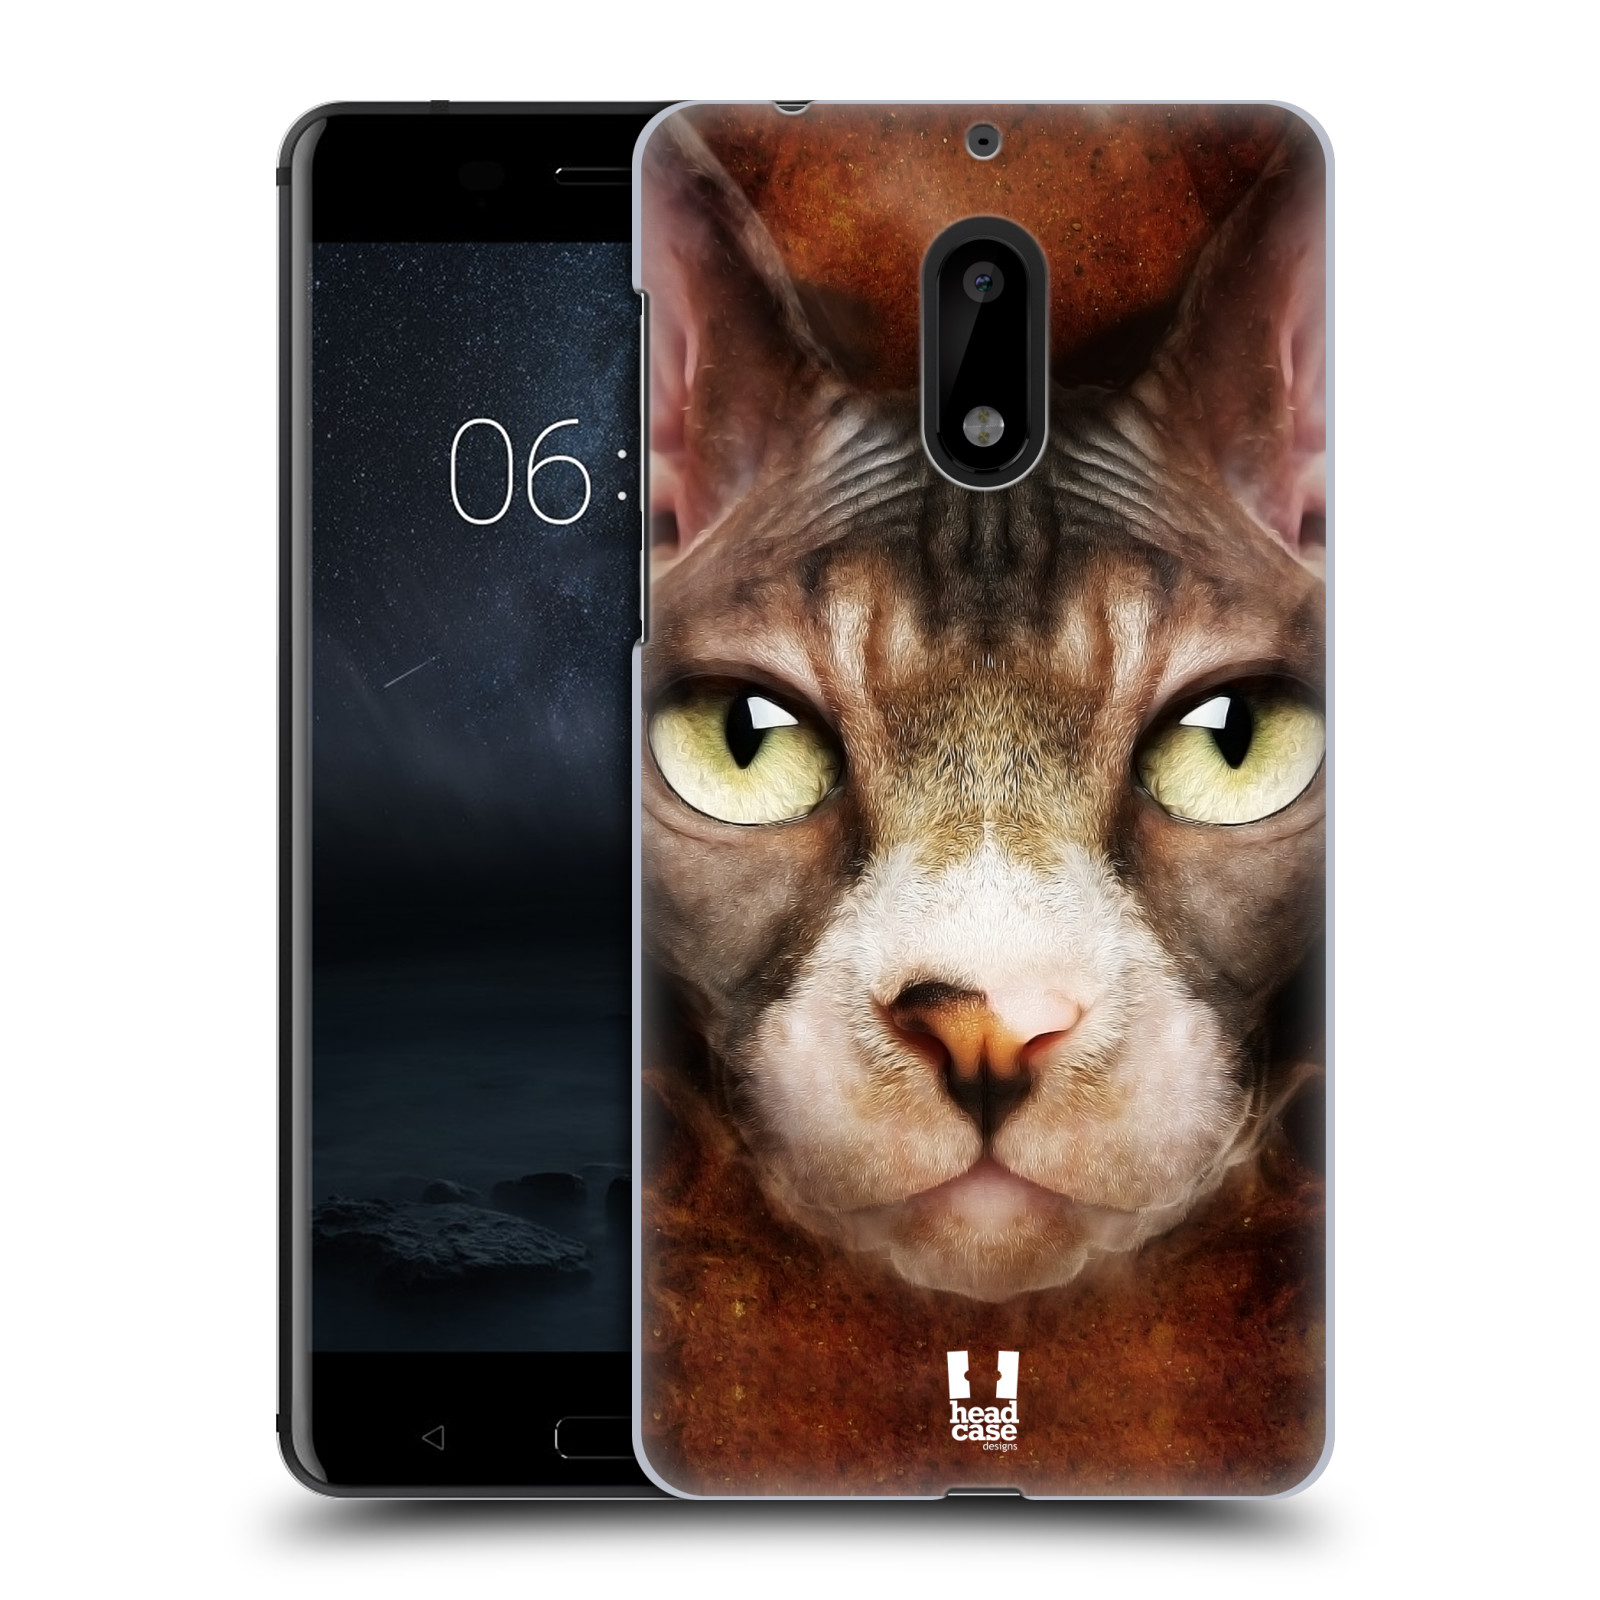 HEAD CASE plastový obal na mobil Nokia 6 vzor Zvířecí tváře kočka sphynx